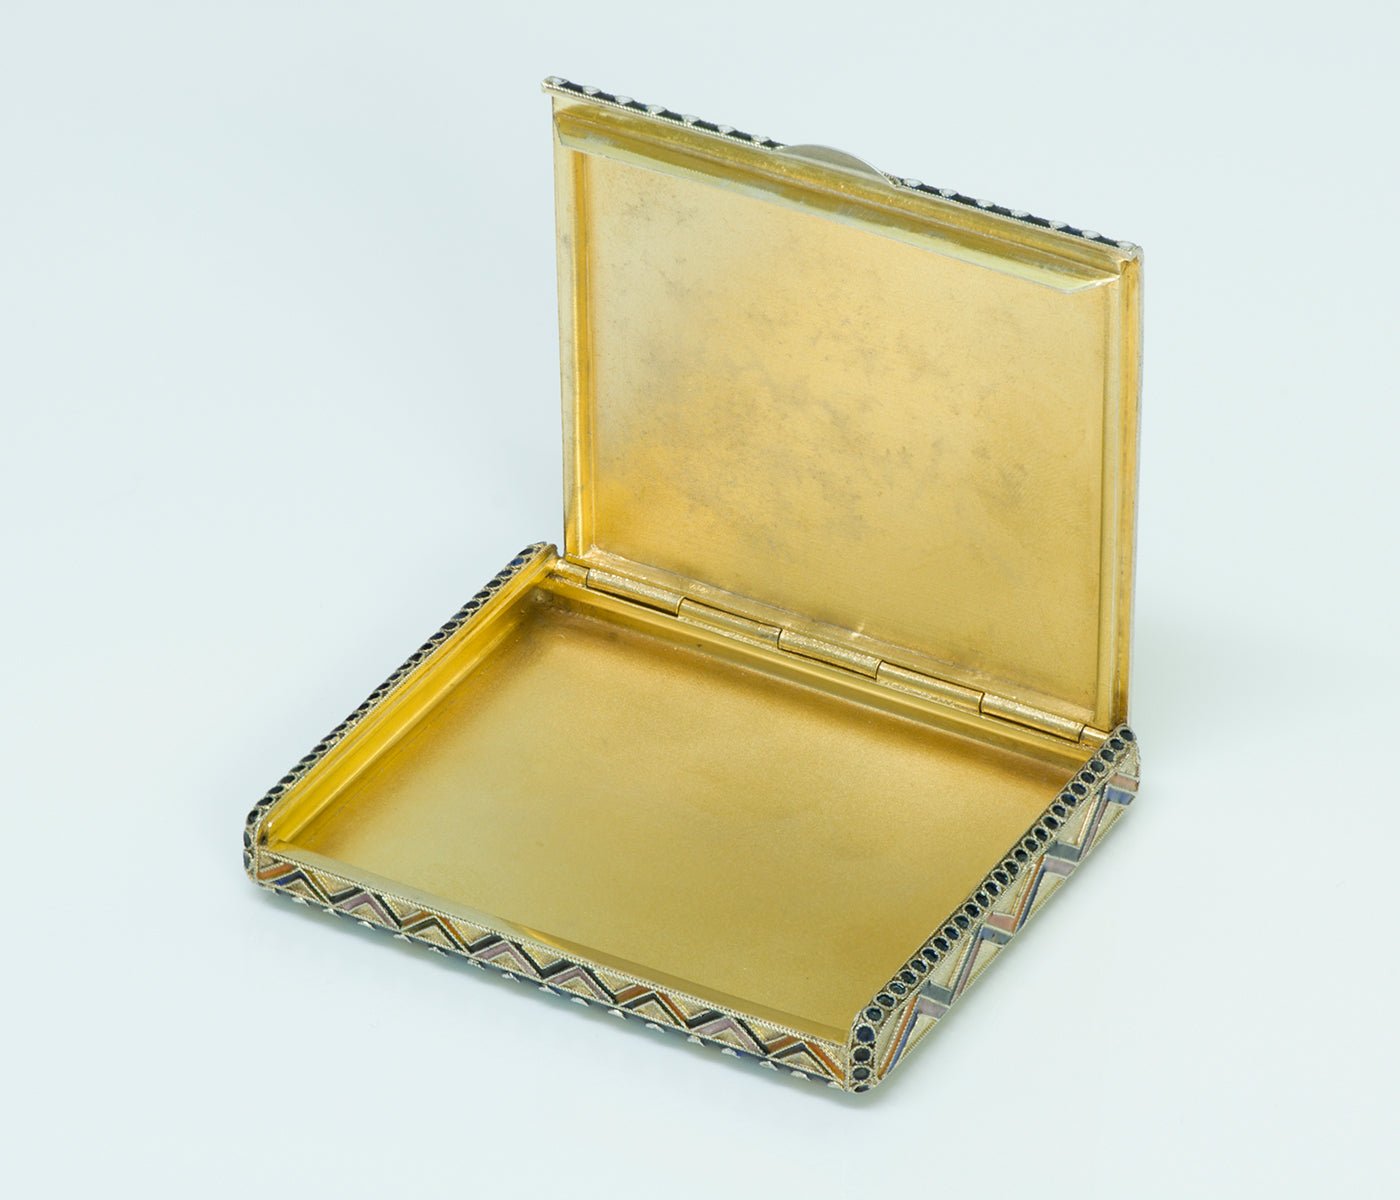 Russian Enamel Silver Box